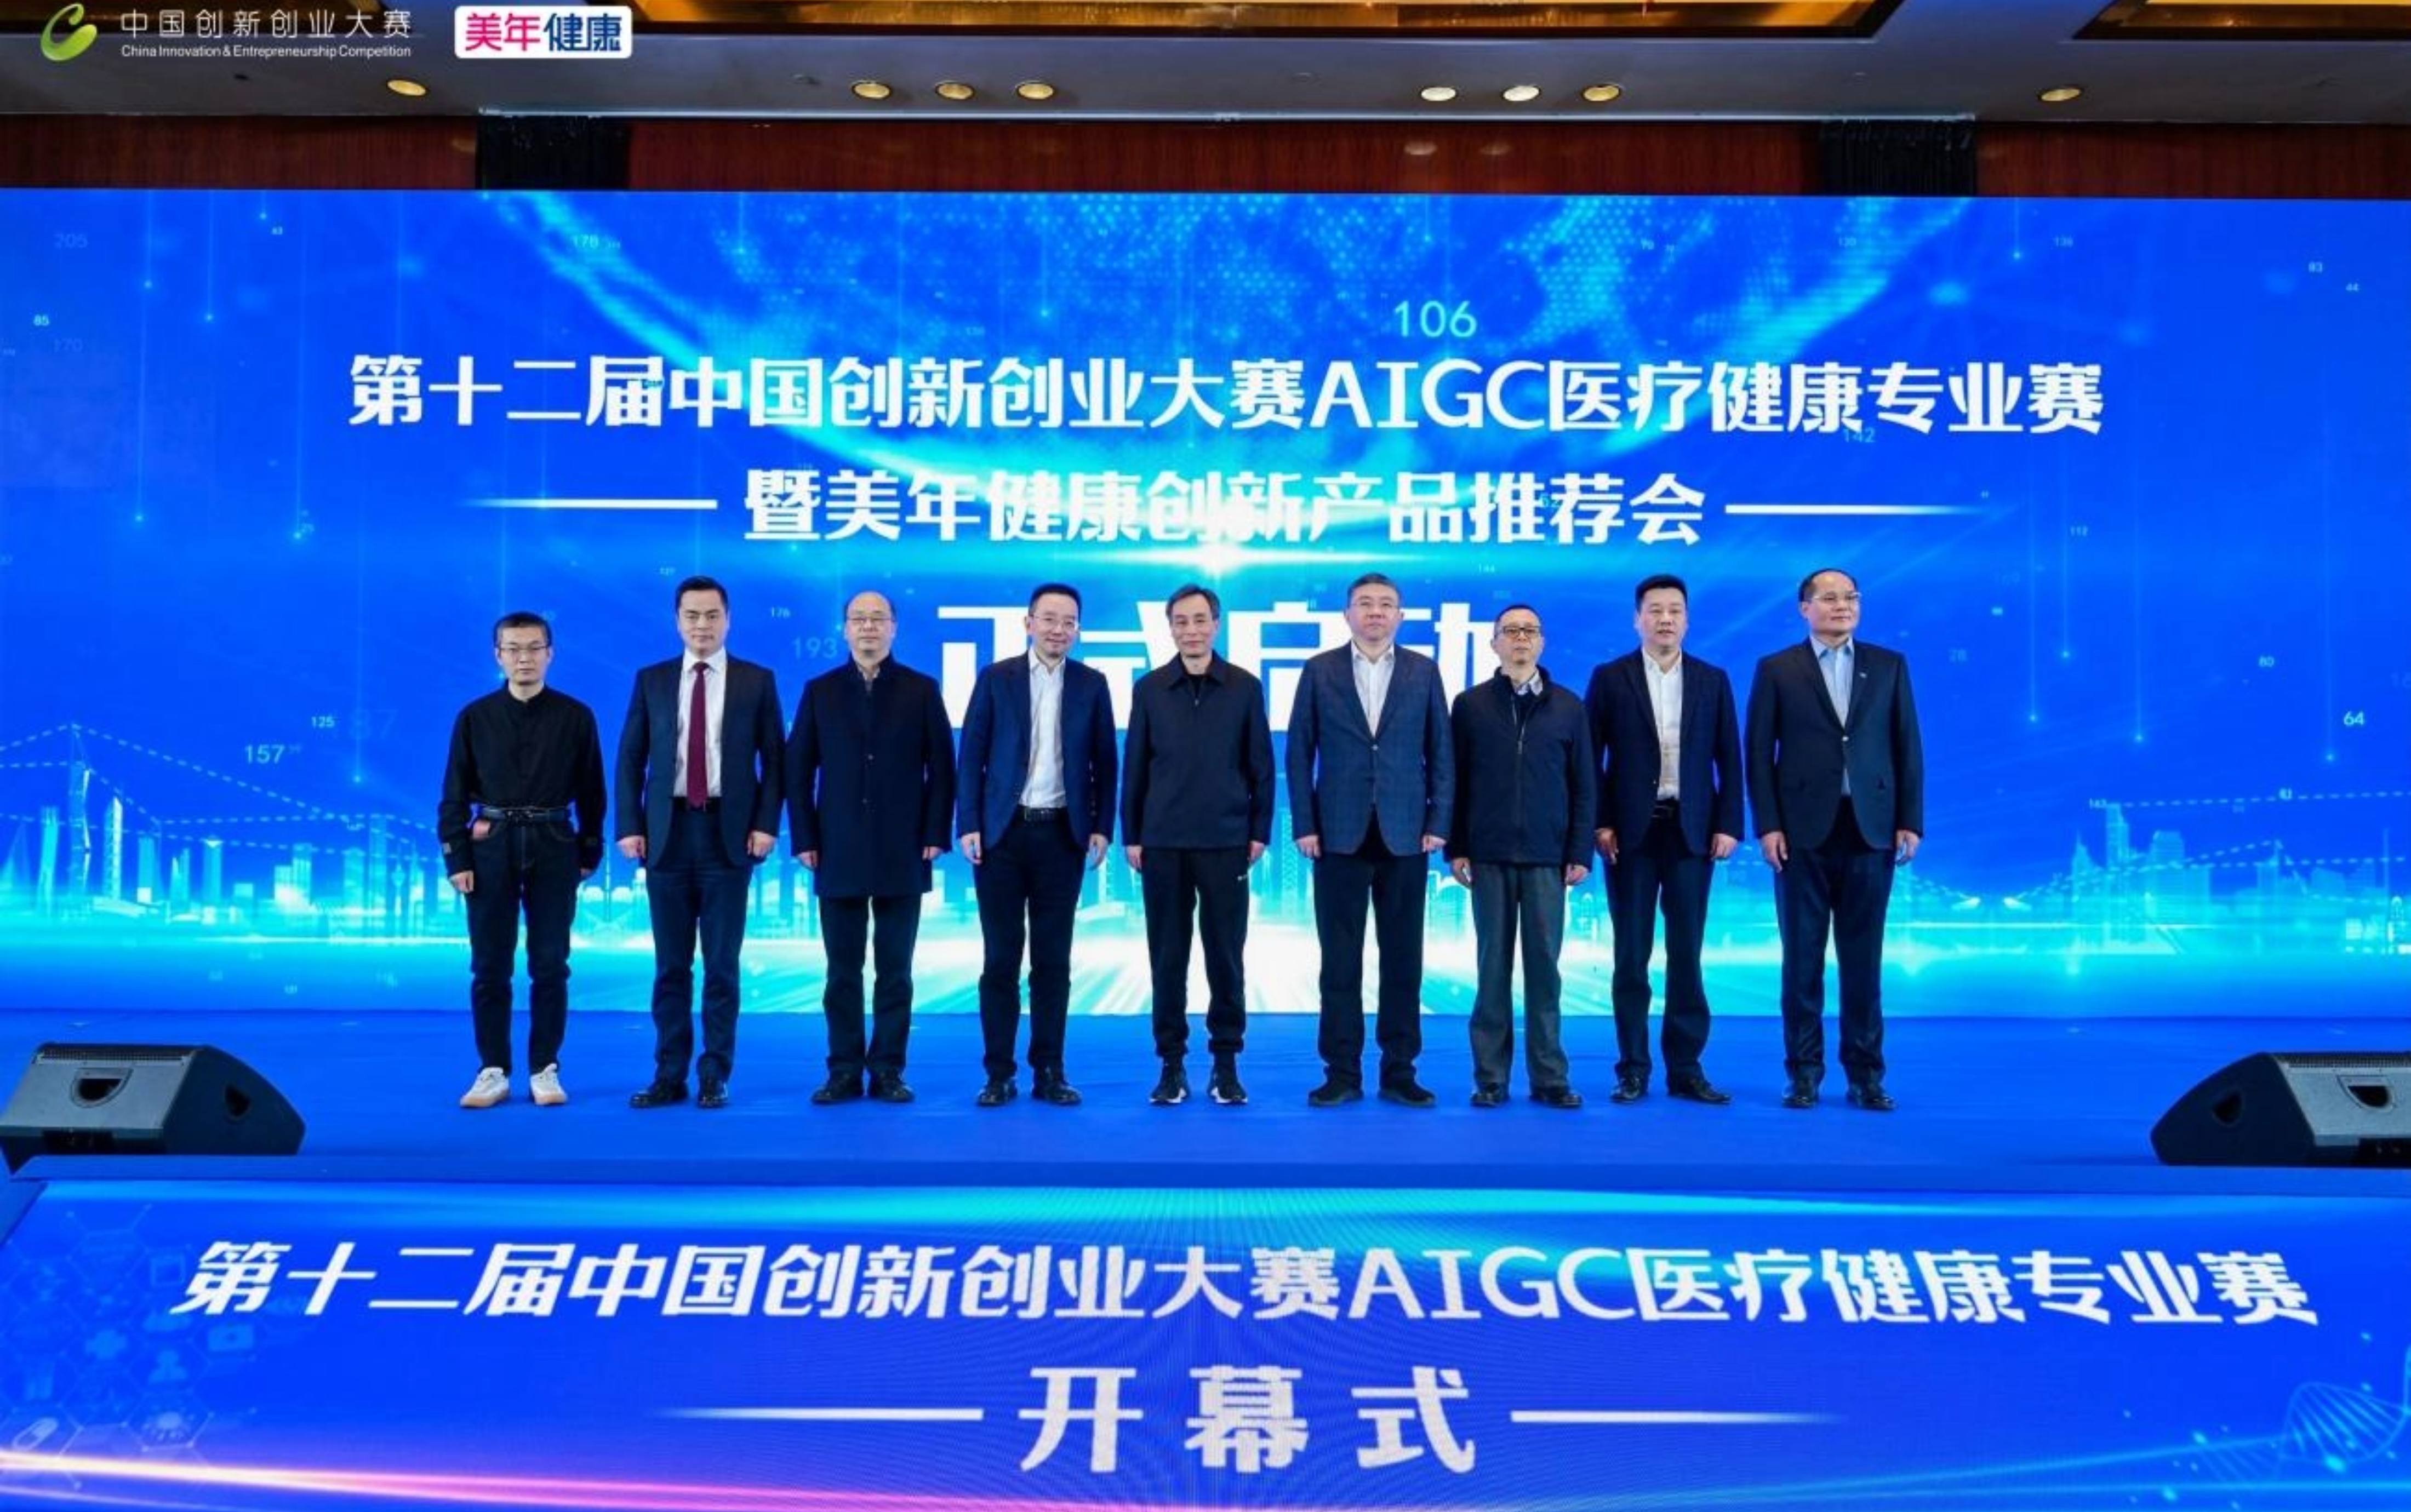 第十二届中国创新创业大赛 AIGC医疗健康专业赛在杭州拱墅开幕